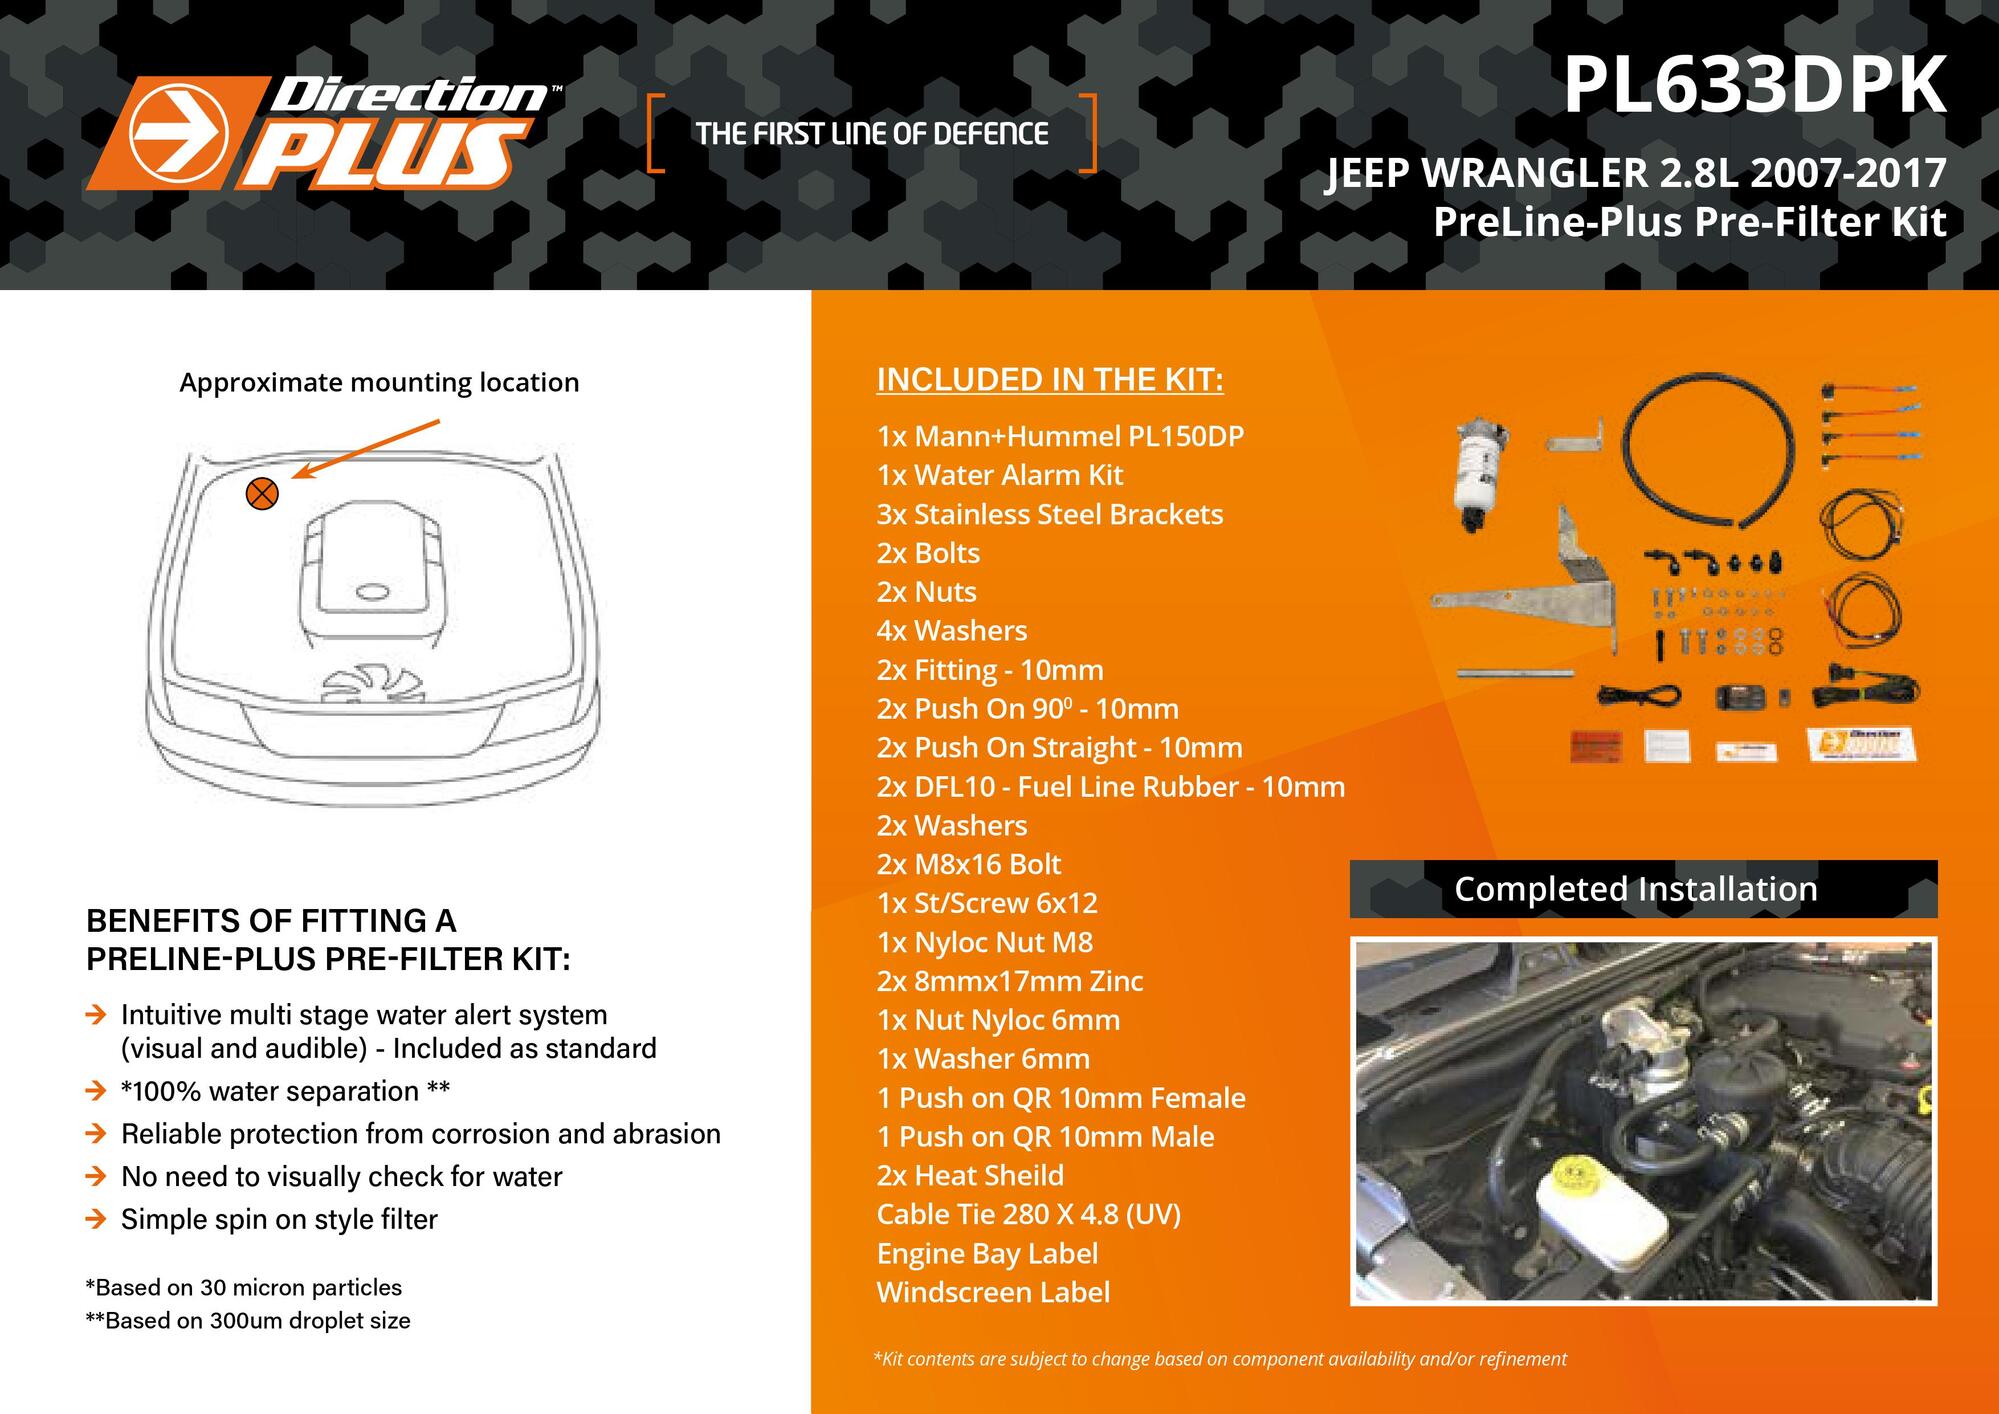 PreLine-Plus Pre-Filter Kit For Jeep Wrangler 2.8L ENS 2007 - 2017